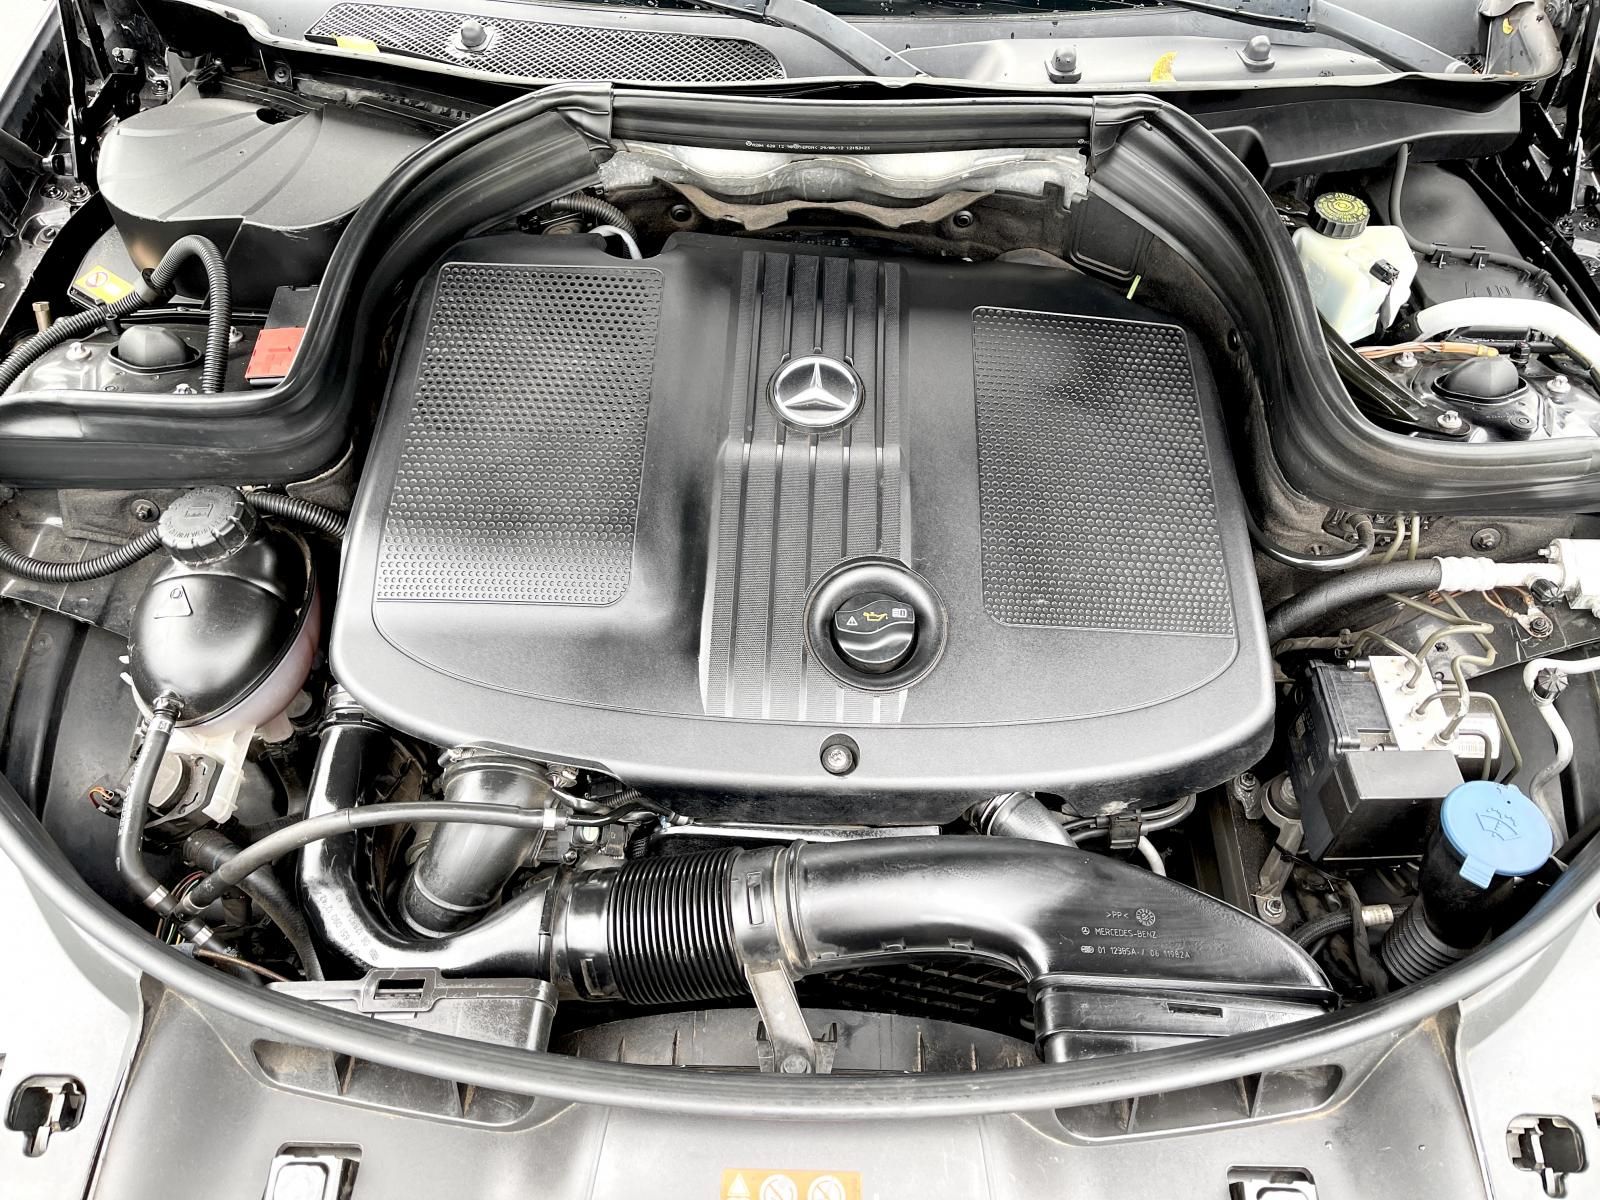 Mercedes-Benz GLK 250 2014 - CDI máy dầu nhập Mỹ 2014 gầm cao đủ đồ chơi không thiếu món nào, cốp điện nội thất đẹp   